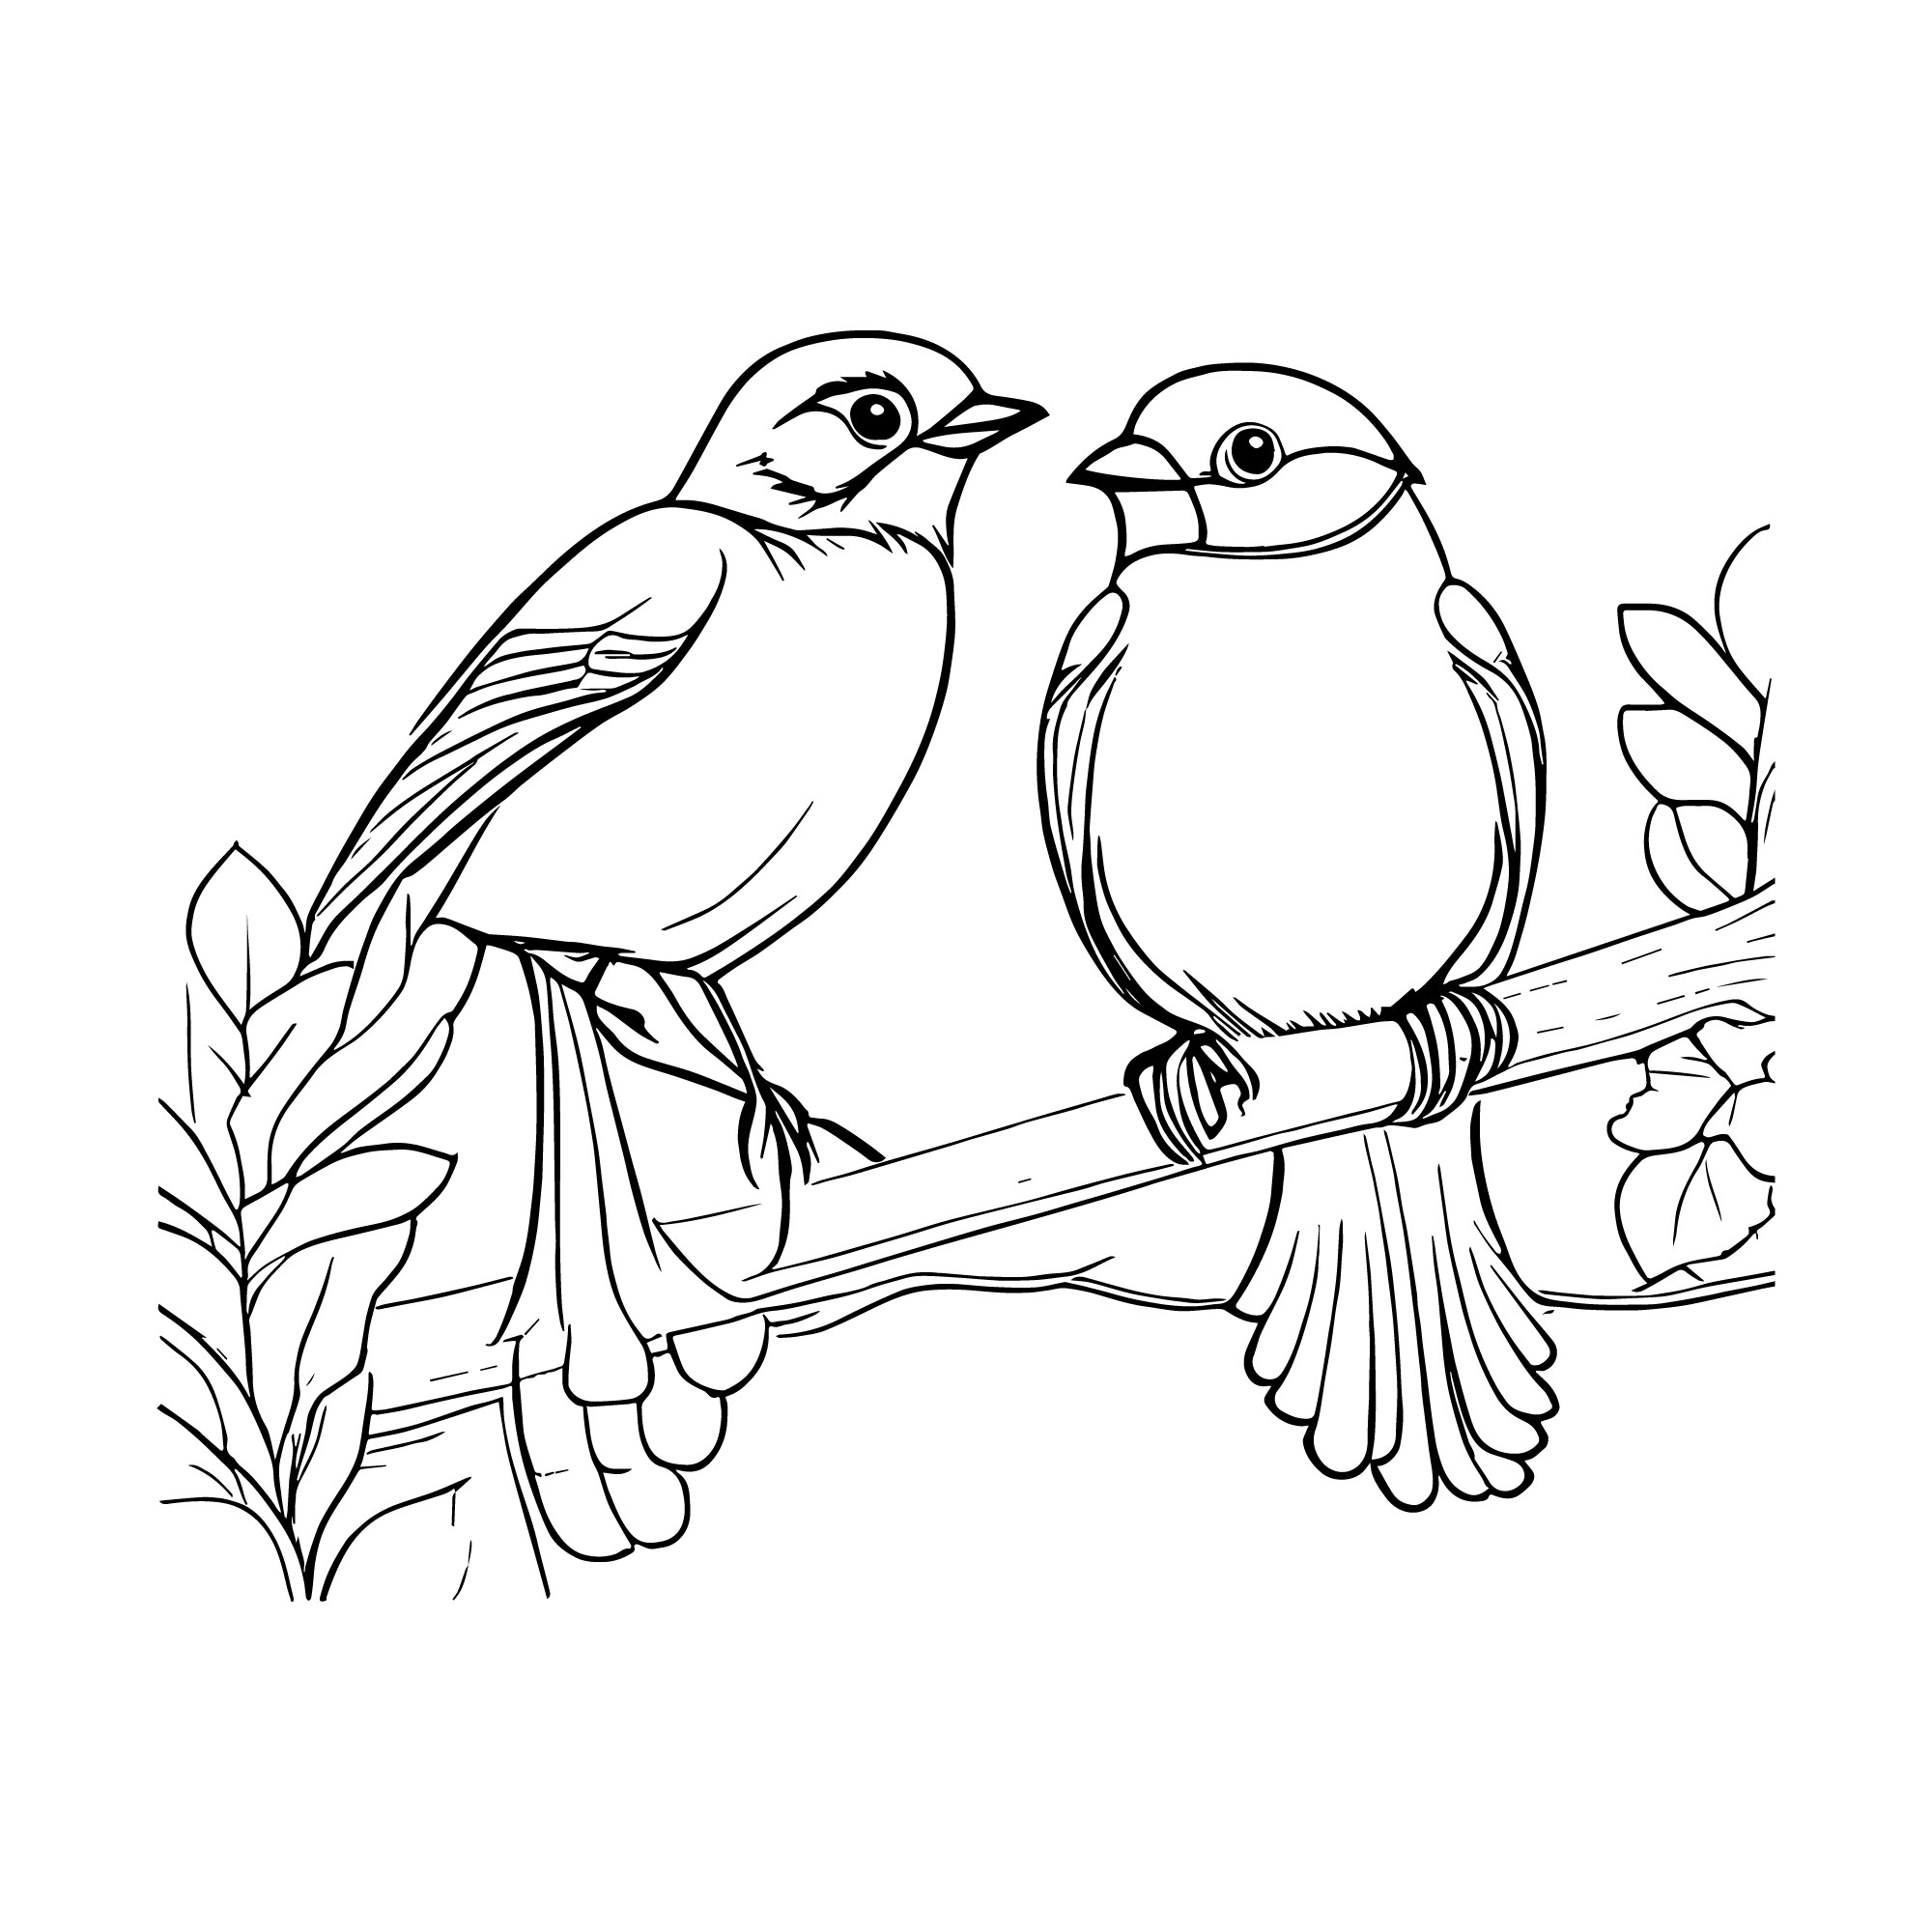 Раскраска для детей: две птицы снегири на ветке